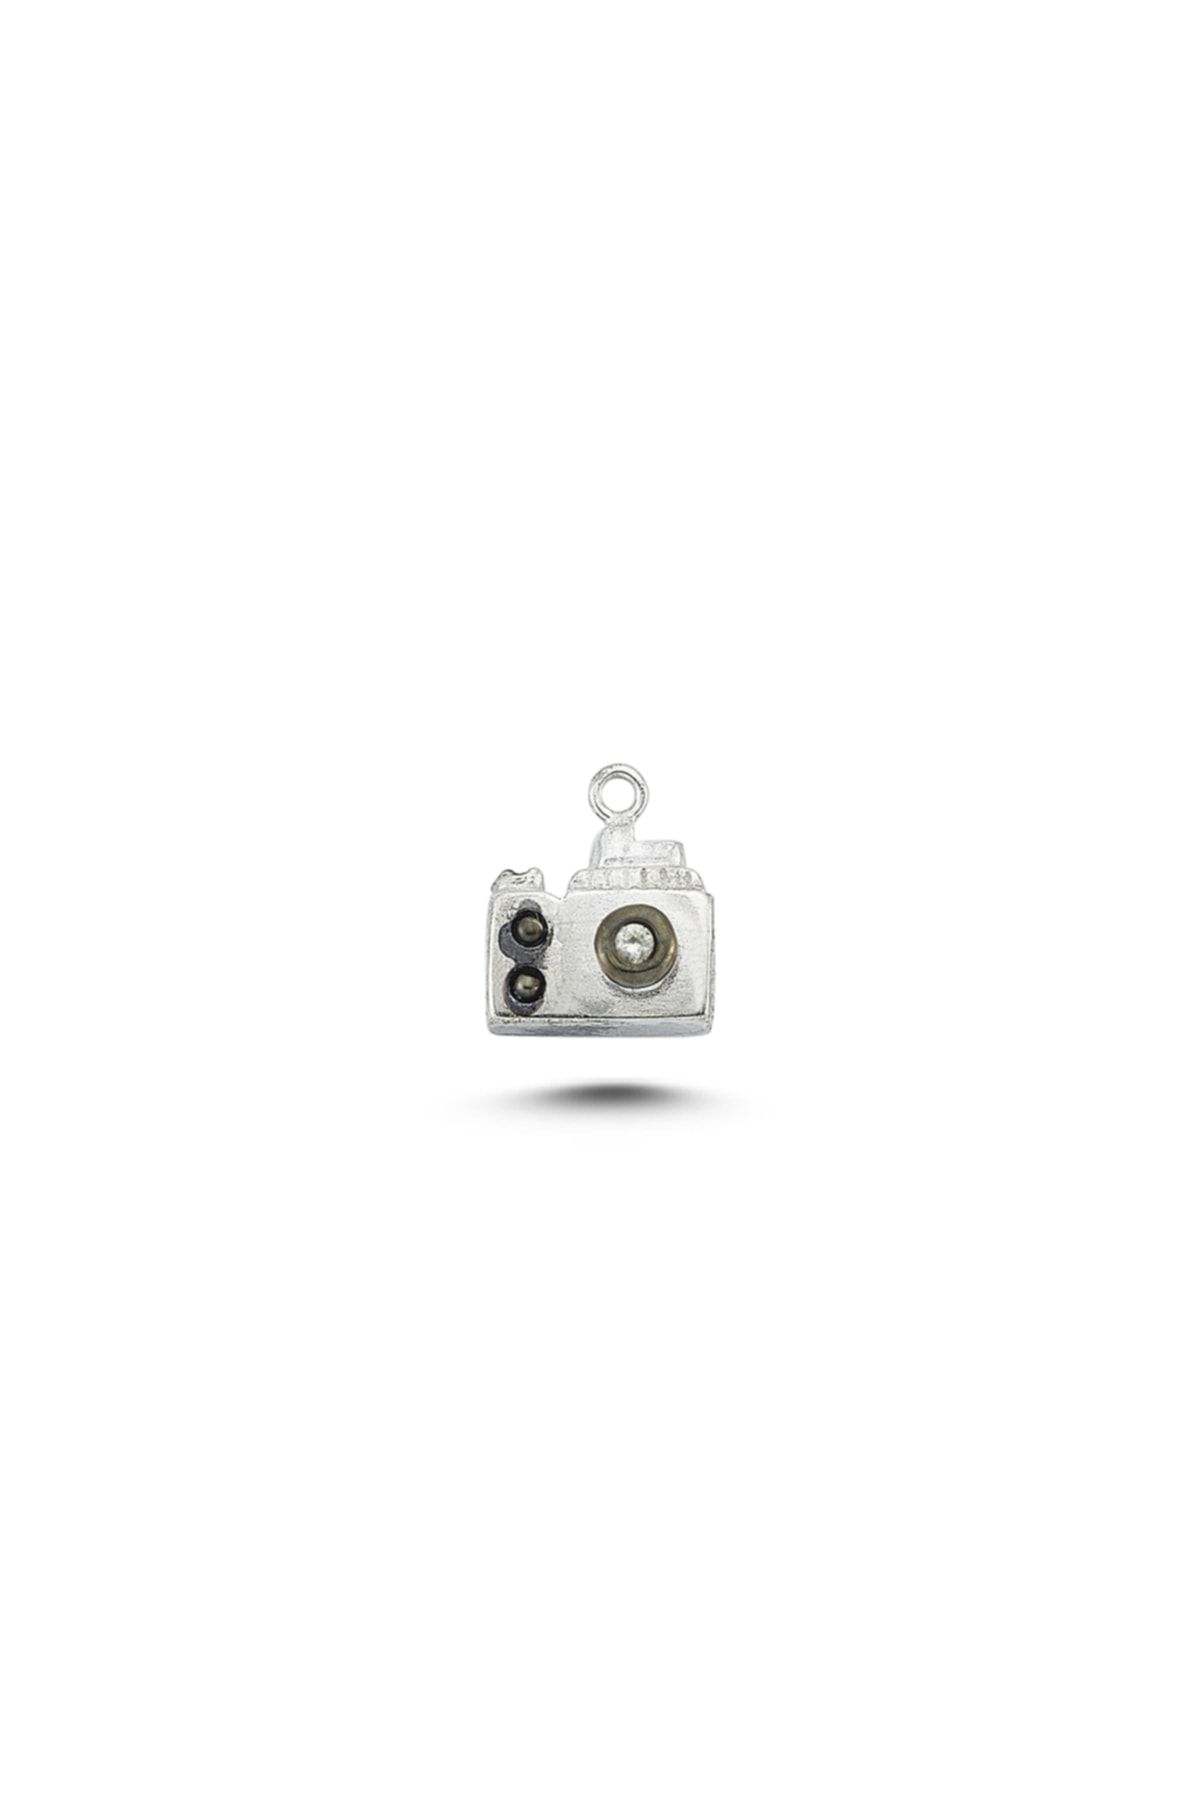 Ecce Mini Pin Fotoğraf Makinası Gümüş Üzeri 14k Altın Kaplamalı Broş/rozet